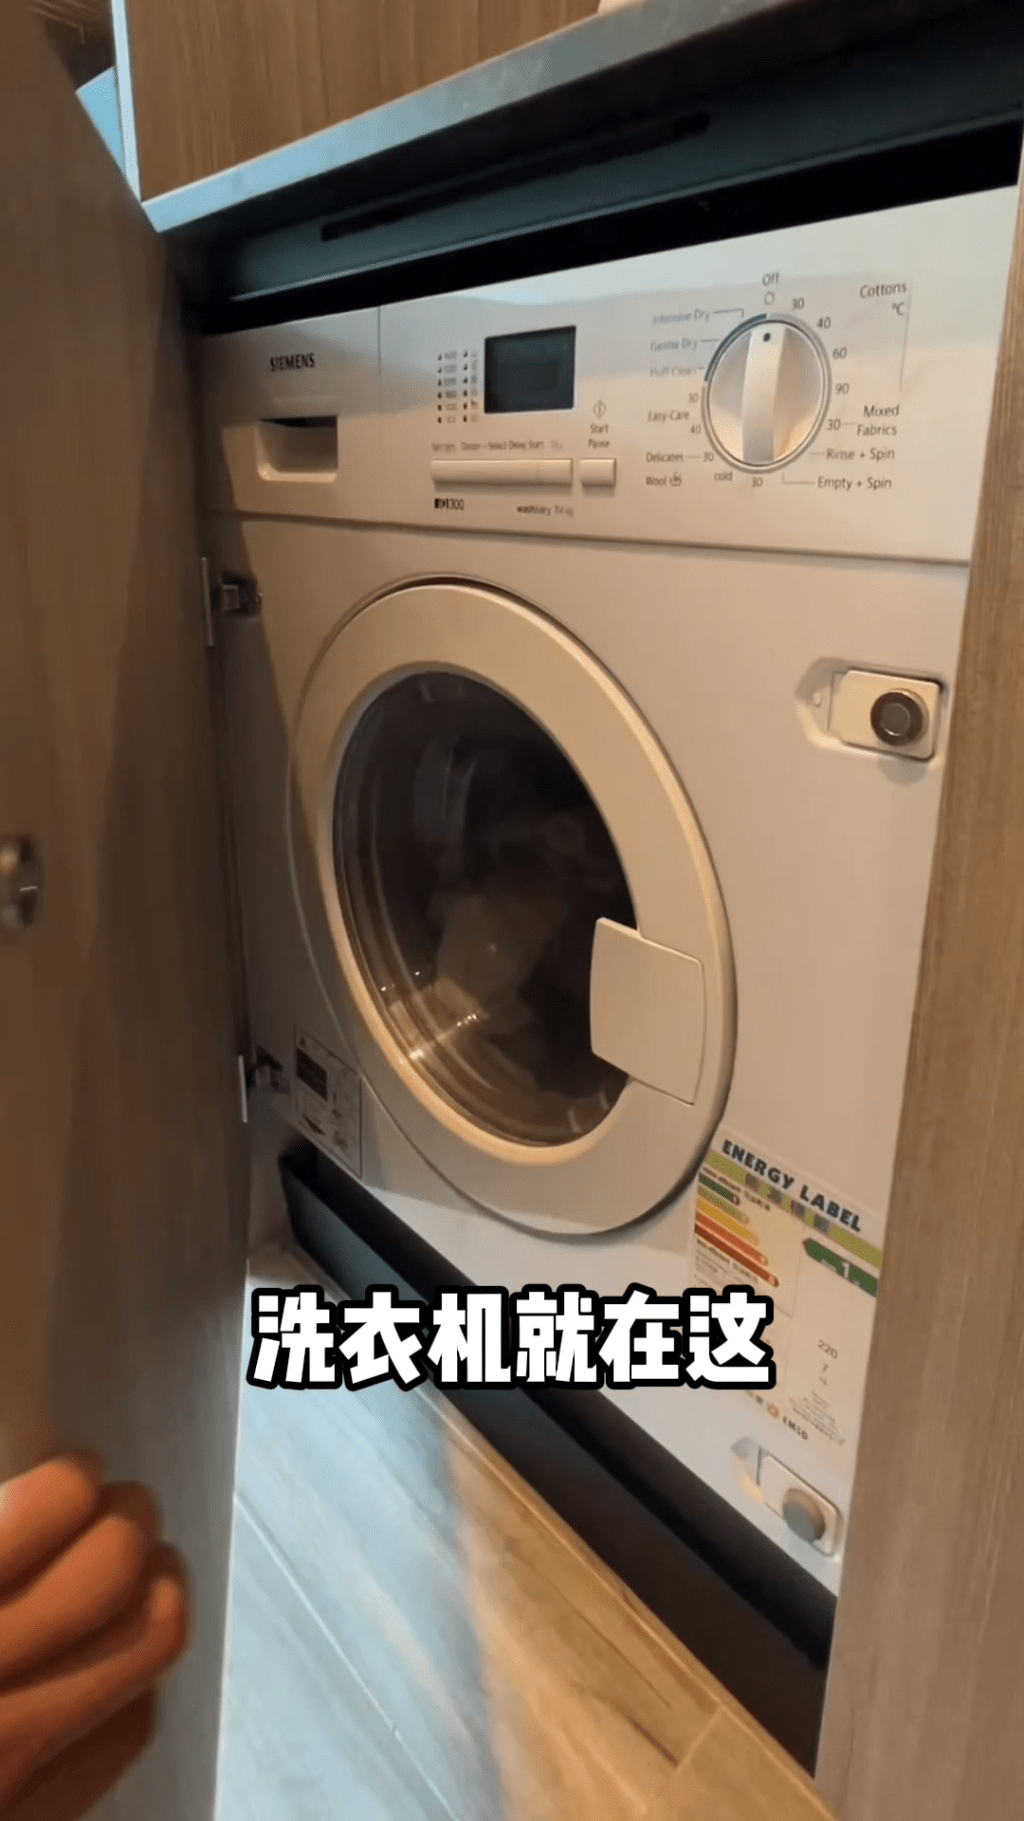 原來是洗衣機。